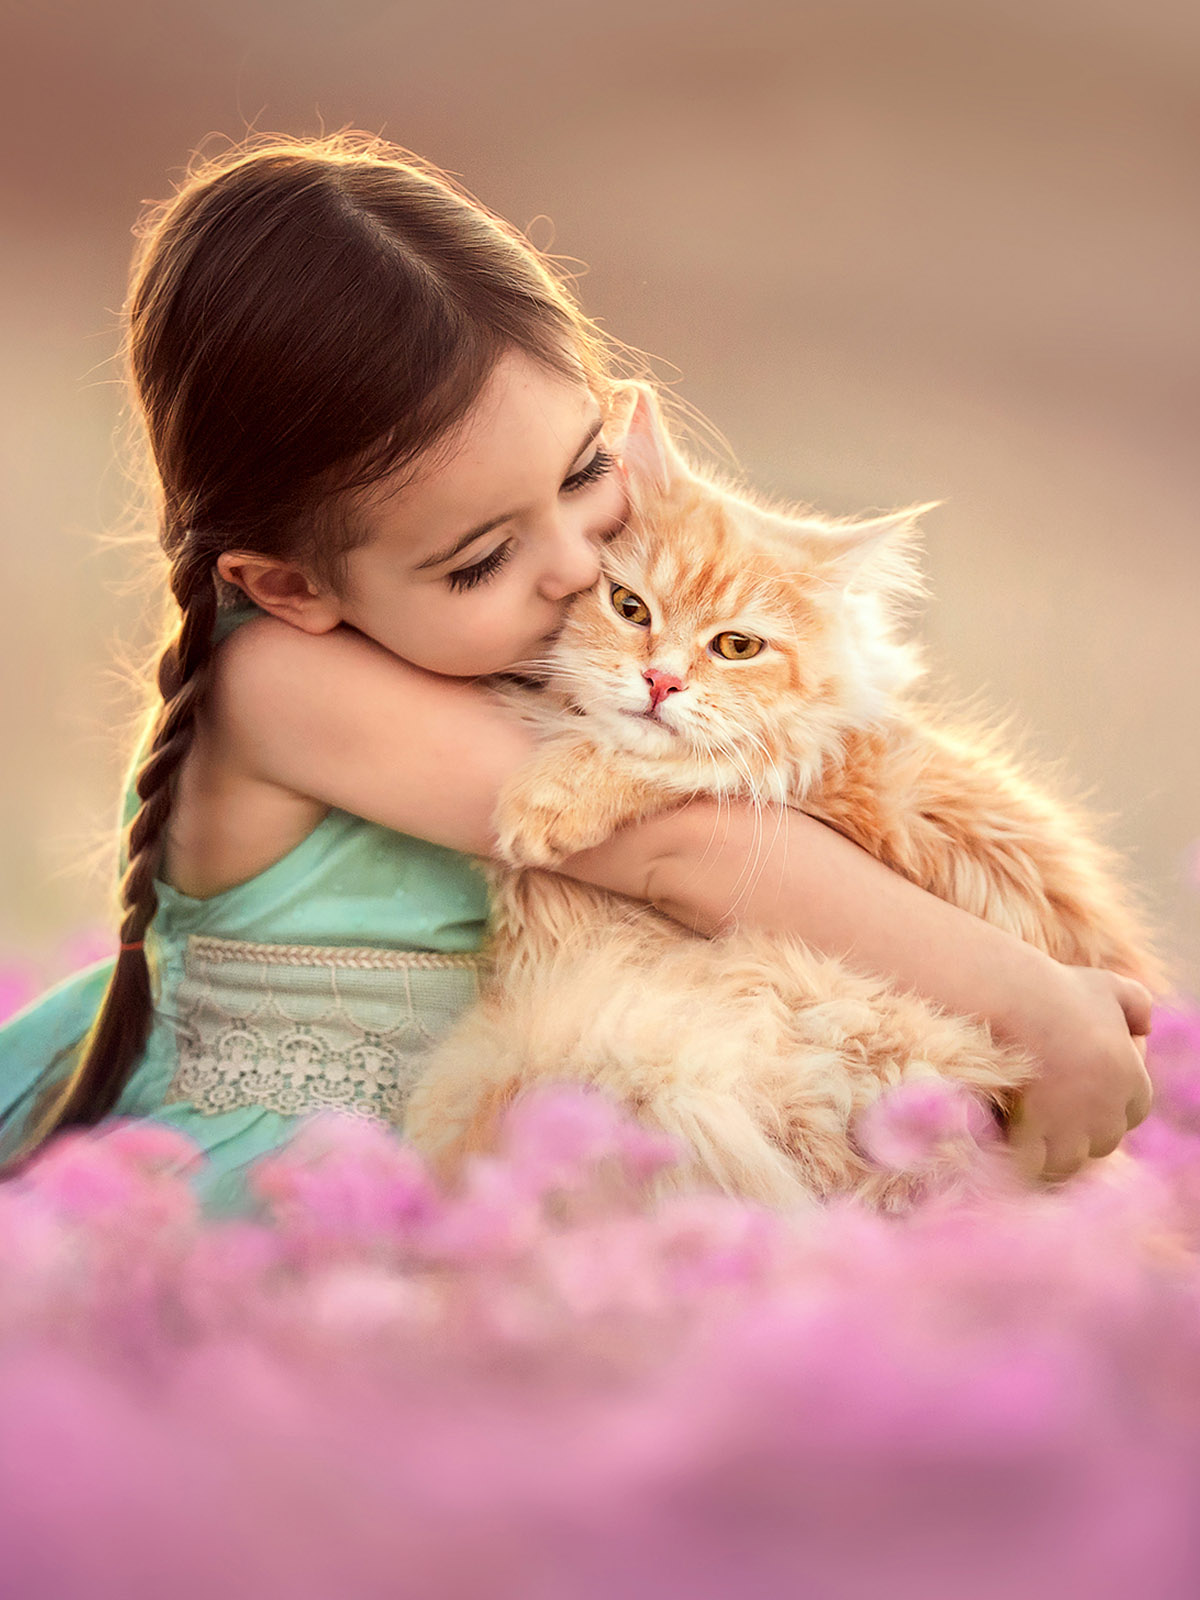 Она добрая и милая. Suzy Mead фотограф. Девочка с котятами. Фотосессия котят. Девушка с котенком.